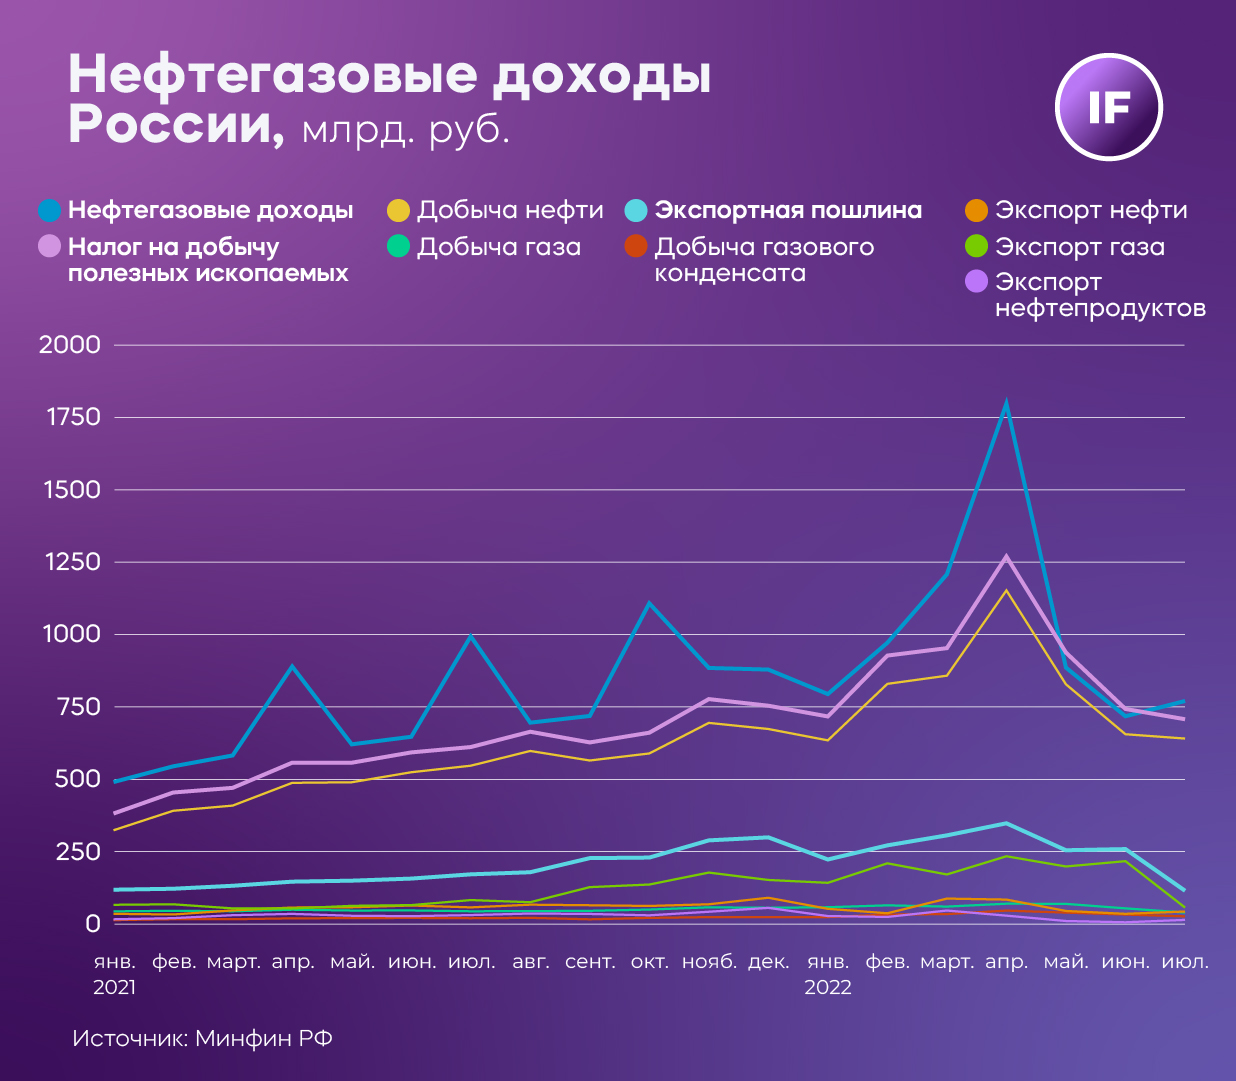 Нефтегазовые доходы России, млрд руб.